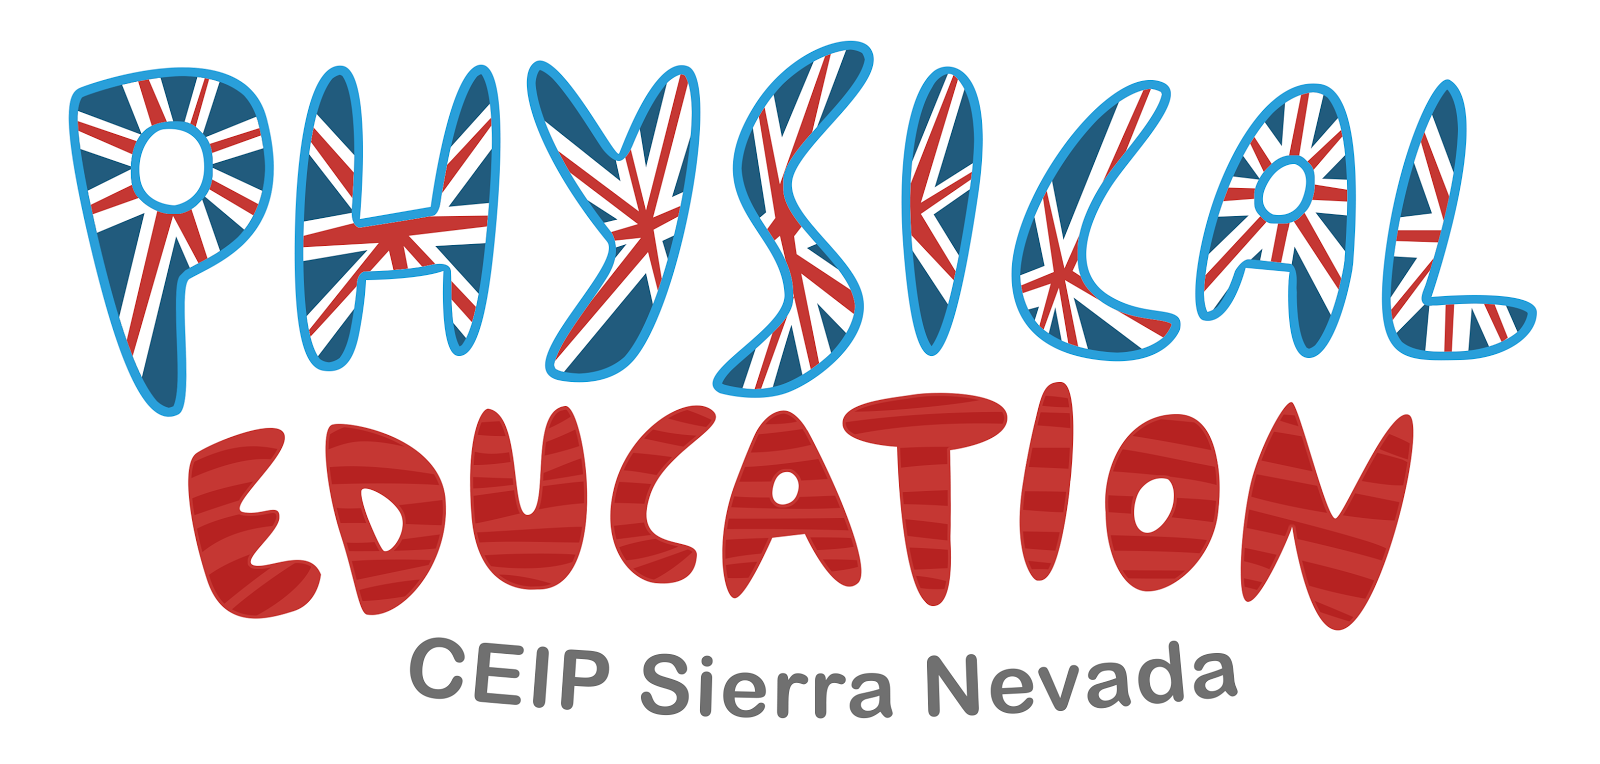 PHYSICAL EDUCATION CEIP SIERRA NEVADA